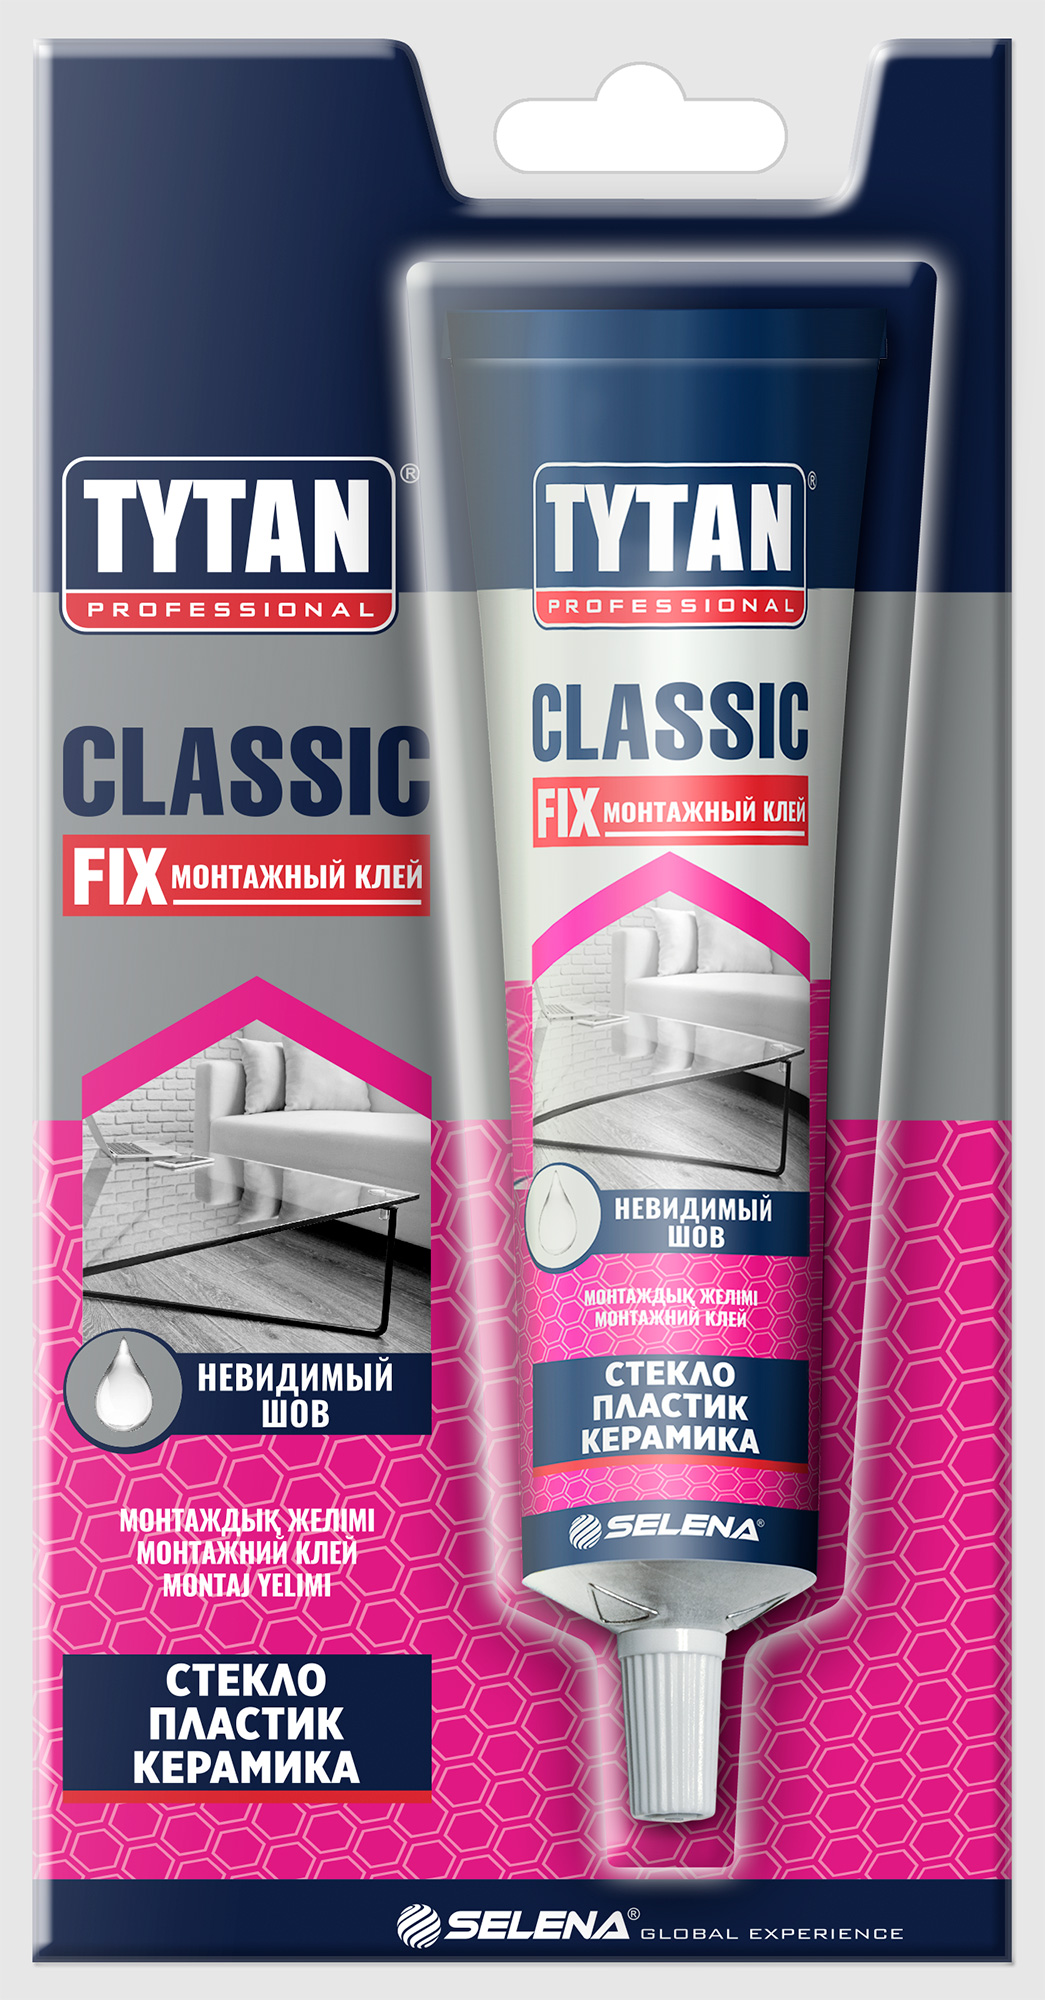 Tytan classic fix прозрачный. Клей Tytan Classic Fix. Клей Tytan quick Fix. Tytan professional Classic Fix. Tytan Classic Fix монтажный клей.